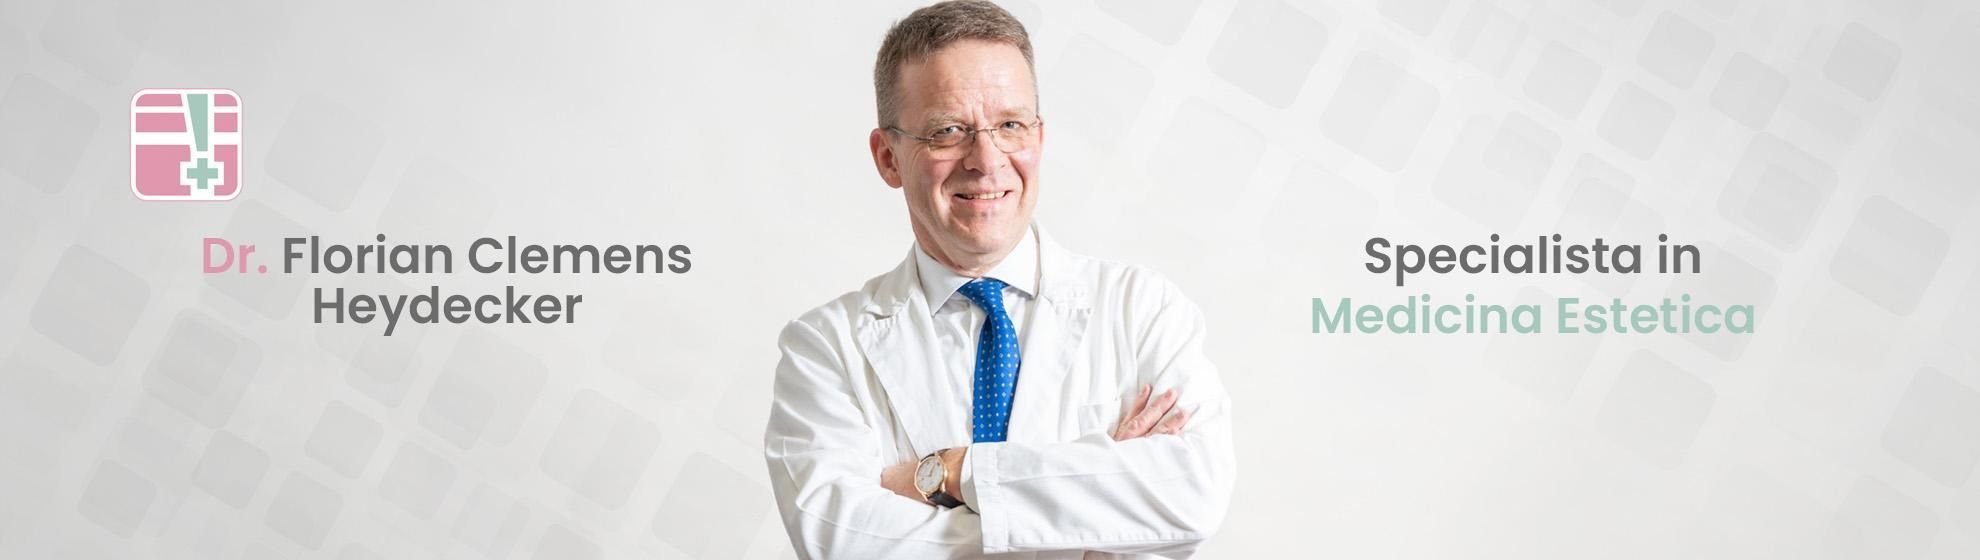 Dr. Florian Clemens Heydecker